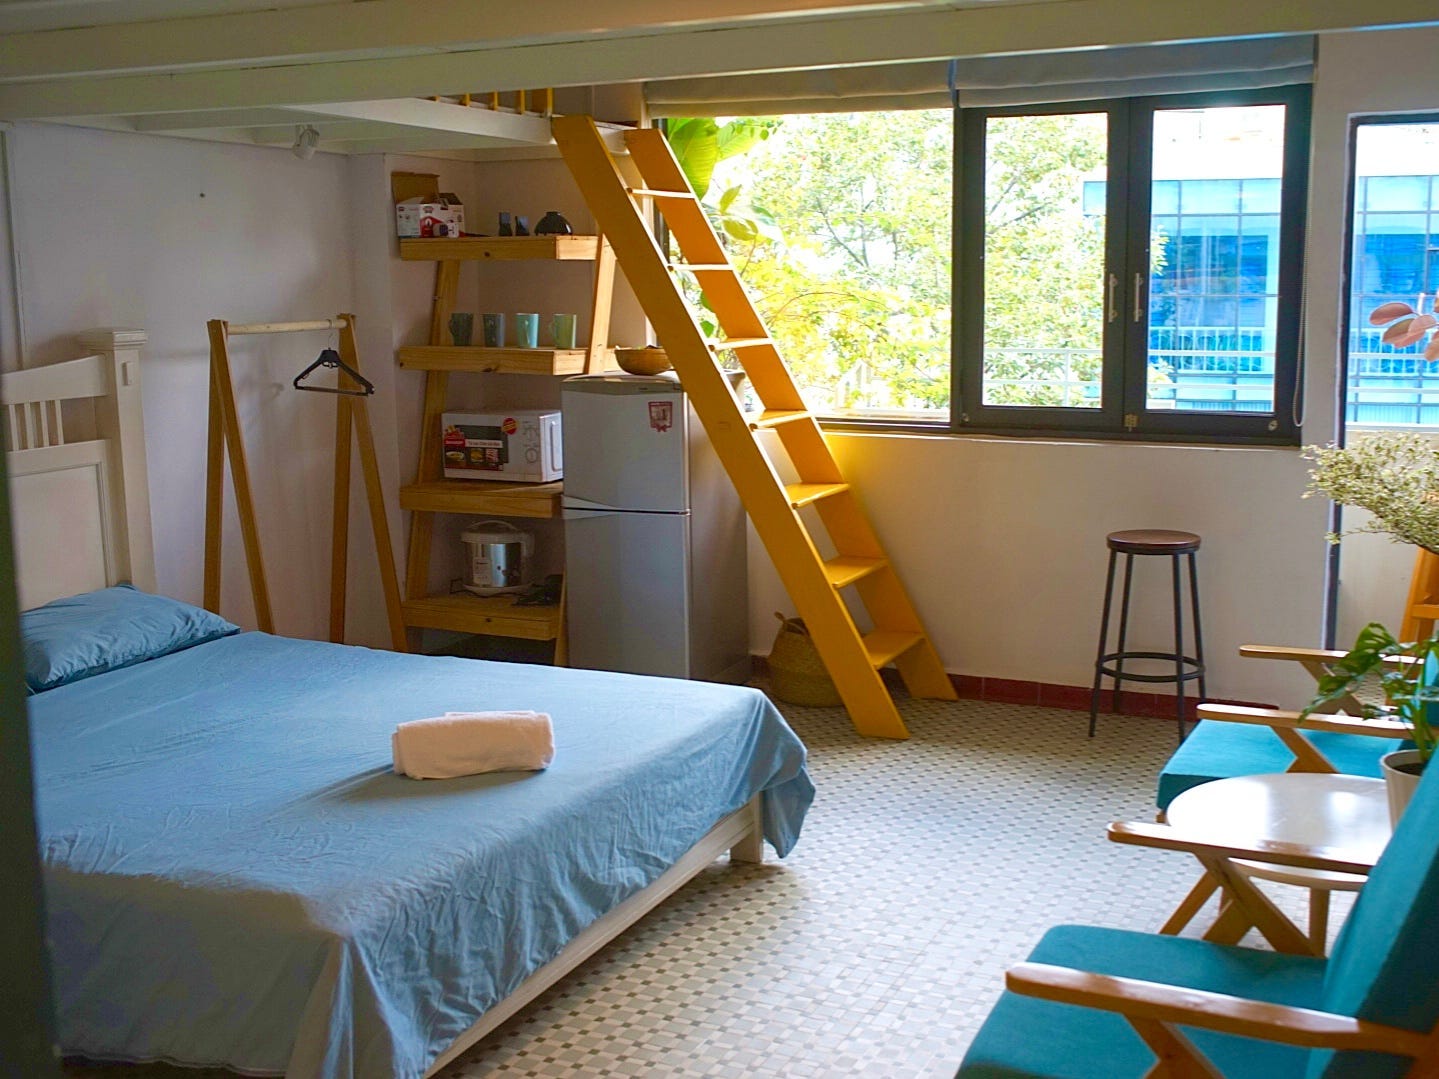 Zimmer mit einem Zwischengeschoss und einem kleinen Balkon mit Blick auf die Straße darunter